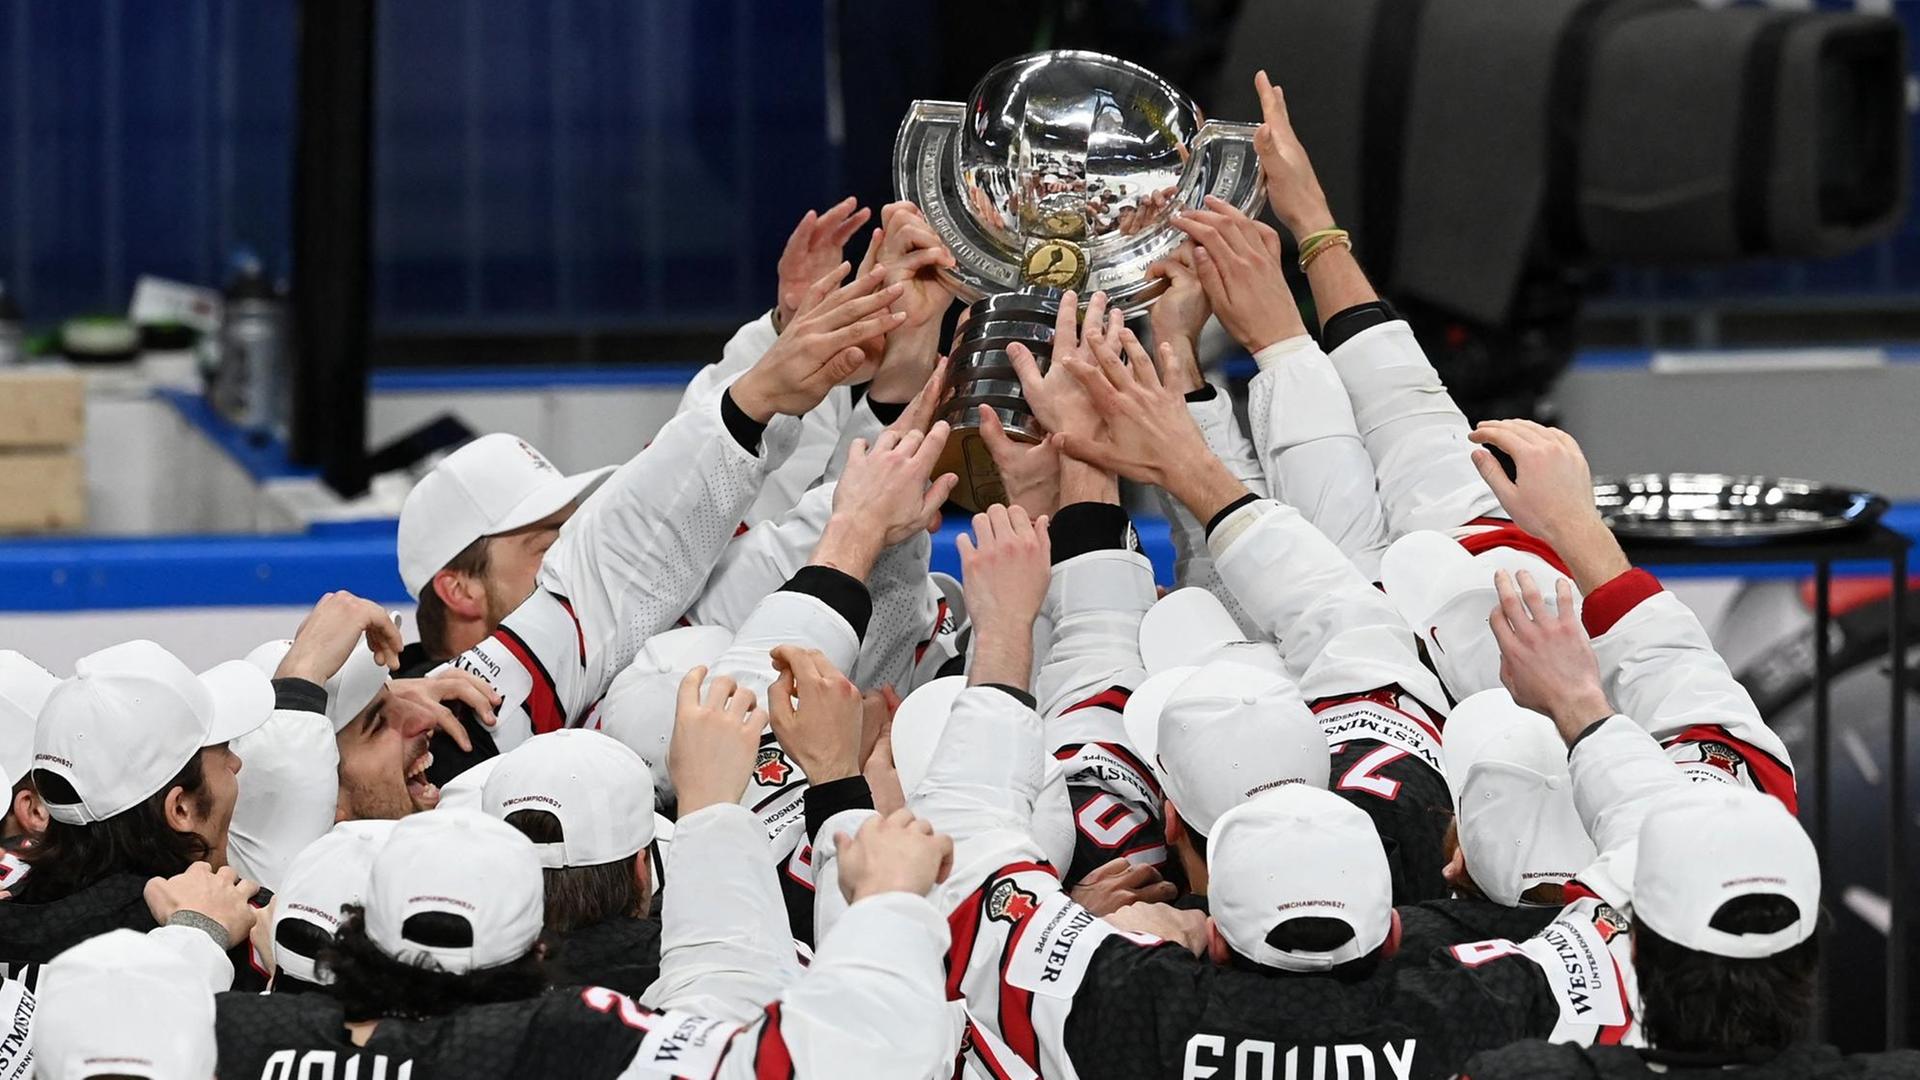 Die Eis-Hockey-Mannschaft von Kanada jubelt.